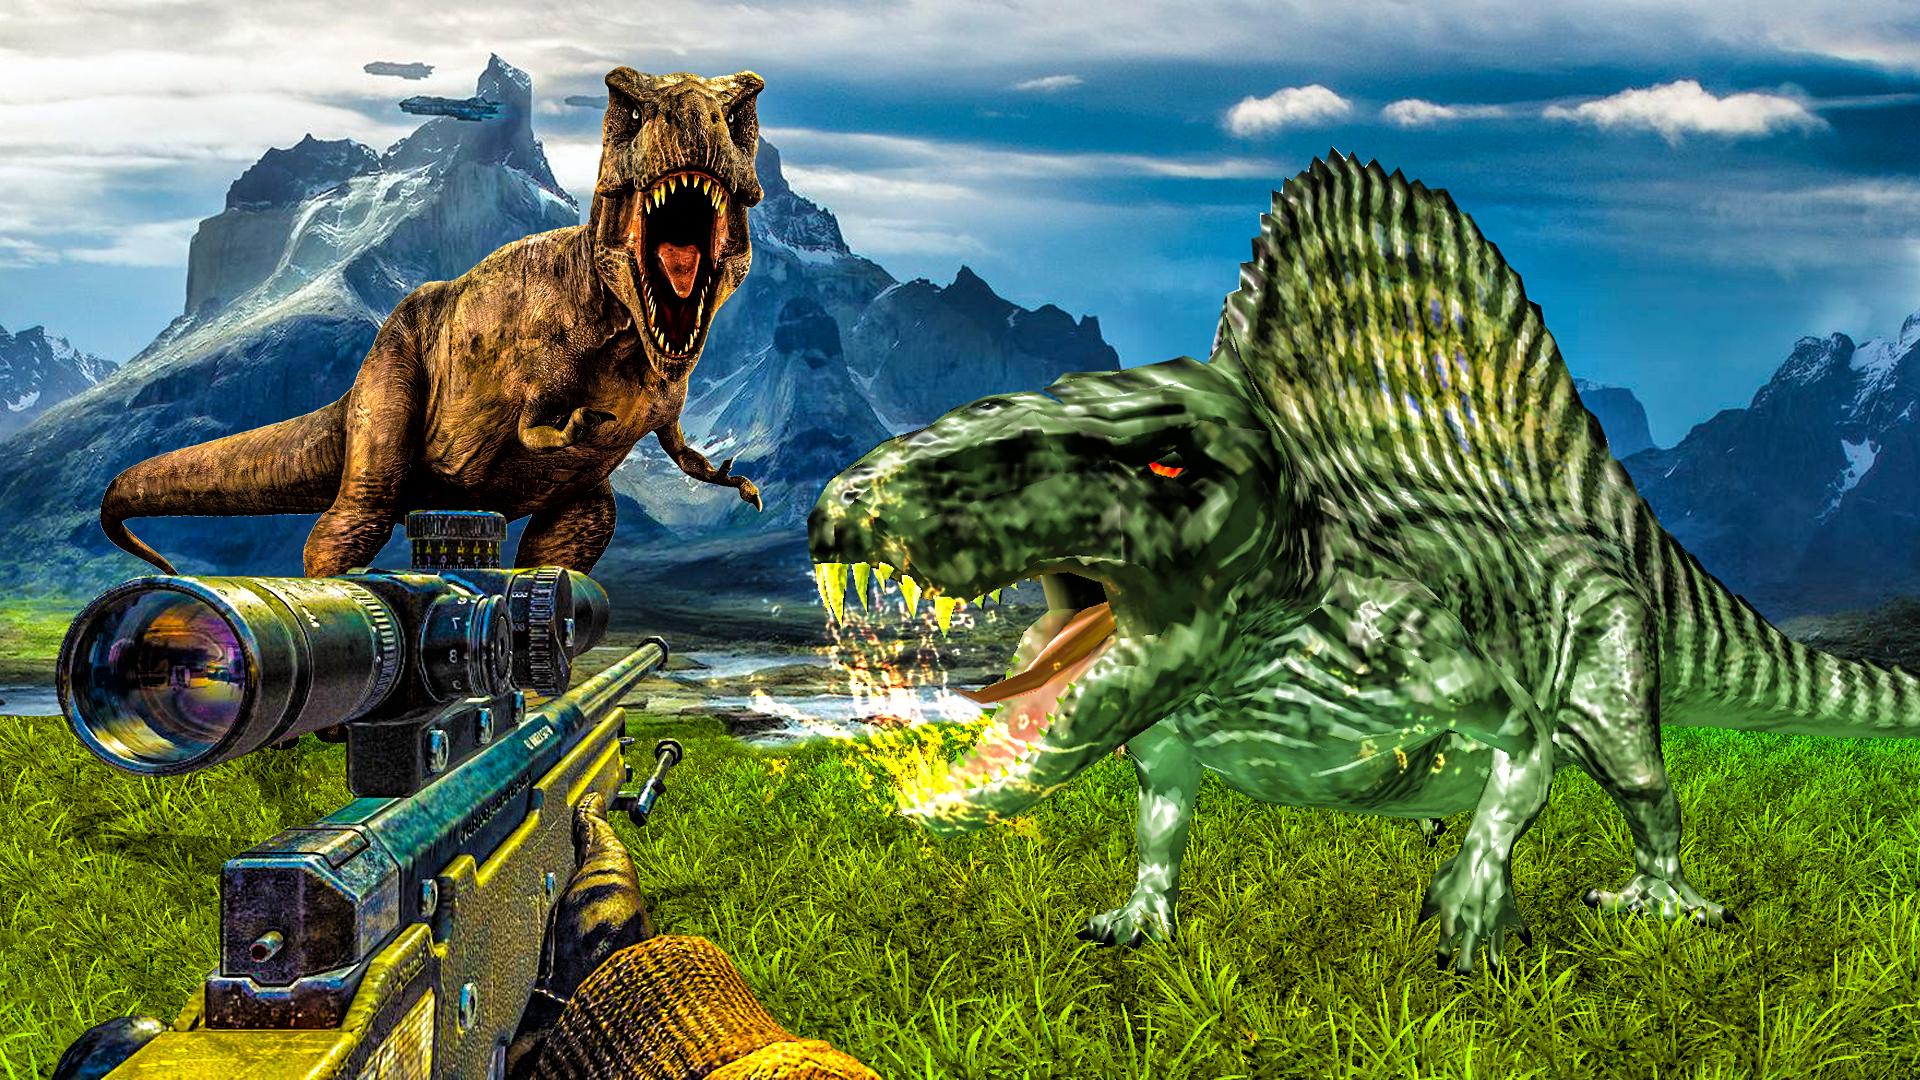 Carnivores Dino hunter game-Dinosaur game shooting 9.1 Screenshot 9